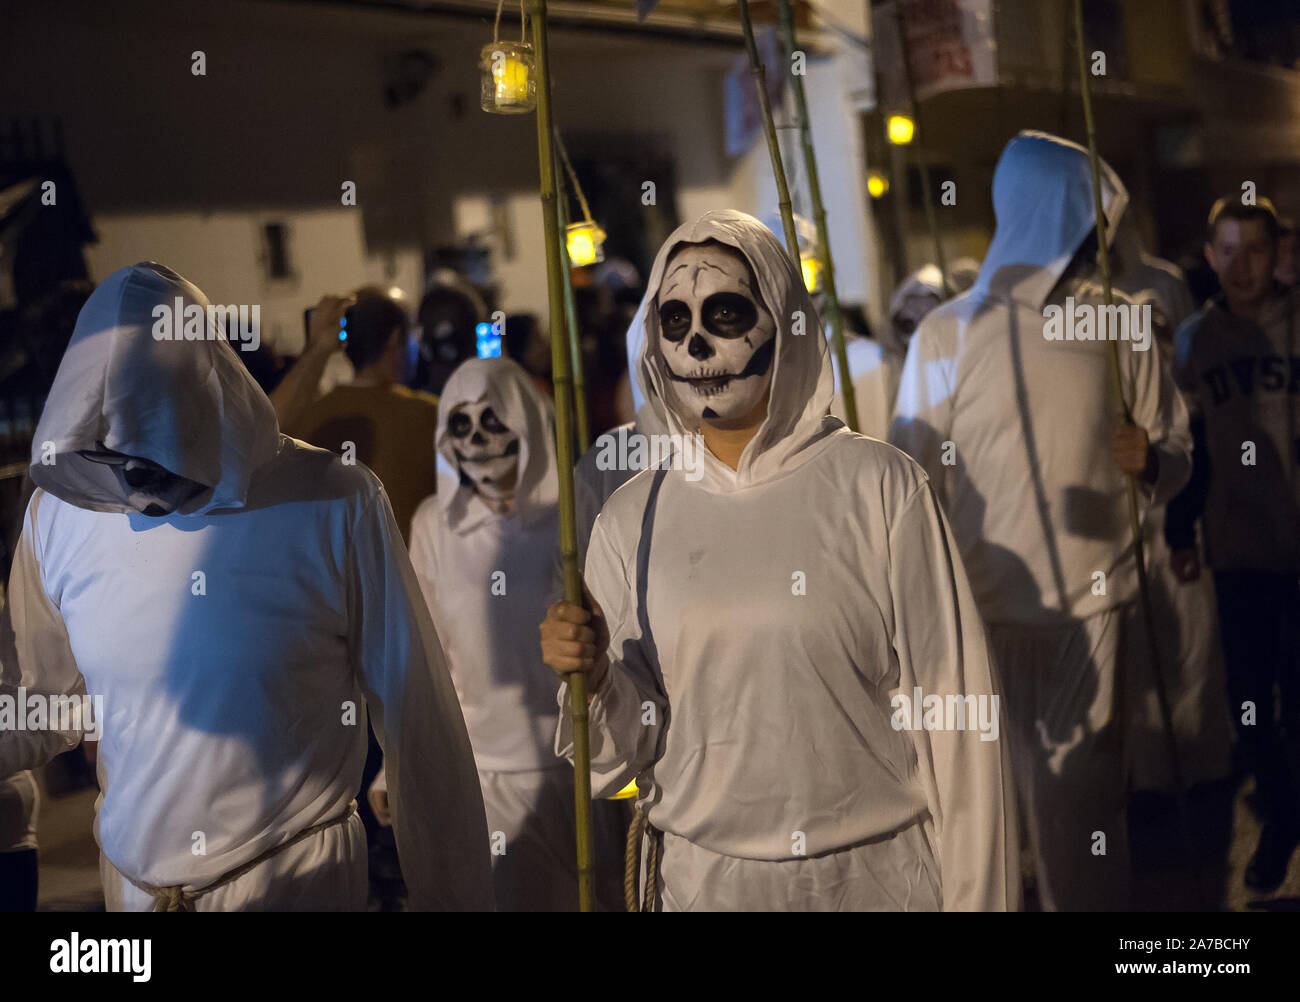 Eine Gruppe von Menschen als Mönche verkleidet die Straße entlang, während Sie Kerzen während des VI-Ausgabe von 'Churriana Noche del Terror' laufen (churriana Horror Night) die Halloween Nacht in der Nachbarschaft von Churriana zu feiern. Wohnsitz in Churriana beteiligen sich an der Halloween Tag mit schrecklichen Kostüme gekleidet, ihre Häuser zu verzieren und mit unheimlichen Leistungen entlang der Straßen. Die 'Churriana Horror Night' ist eine der beliebtesten Veranstaltungen in der Stadt markiert die Halloween Tag, und bei dieser Gelegenheit das Thema der Ausgabe ist die Hexen. Stockfoto